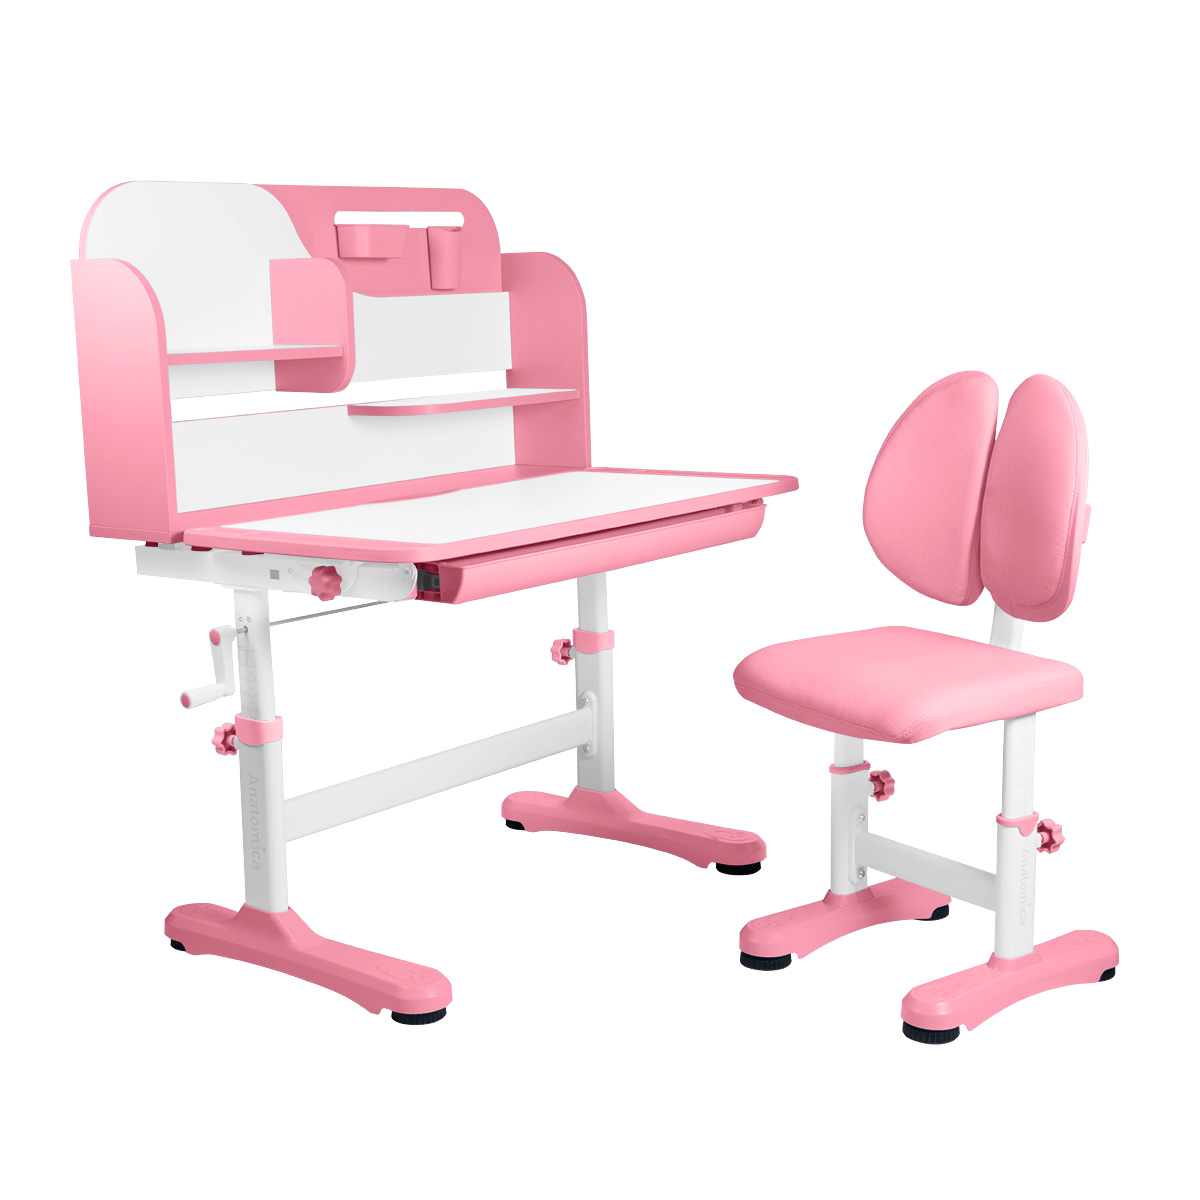 Комплект Anatomica Amadeo парта, стул, надстройка, выдвижной ящик, розовый anatomica комплект fiona парта стул надстройка выдвижной ящик